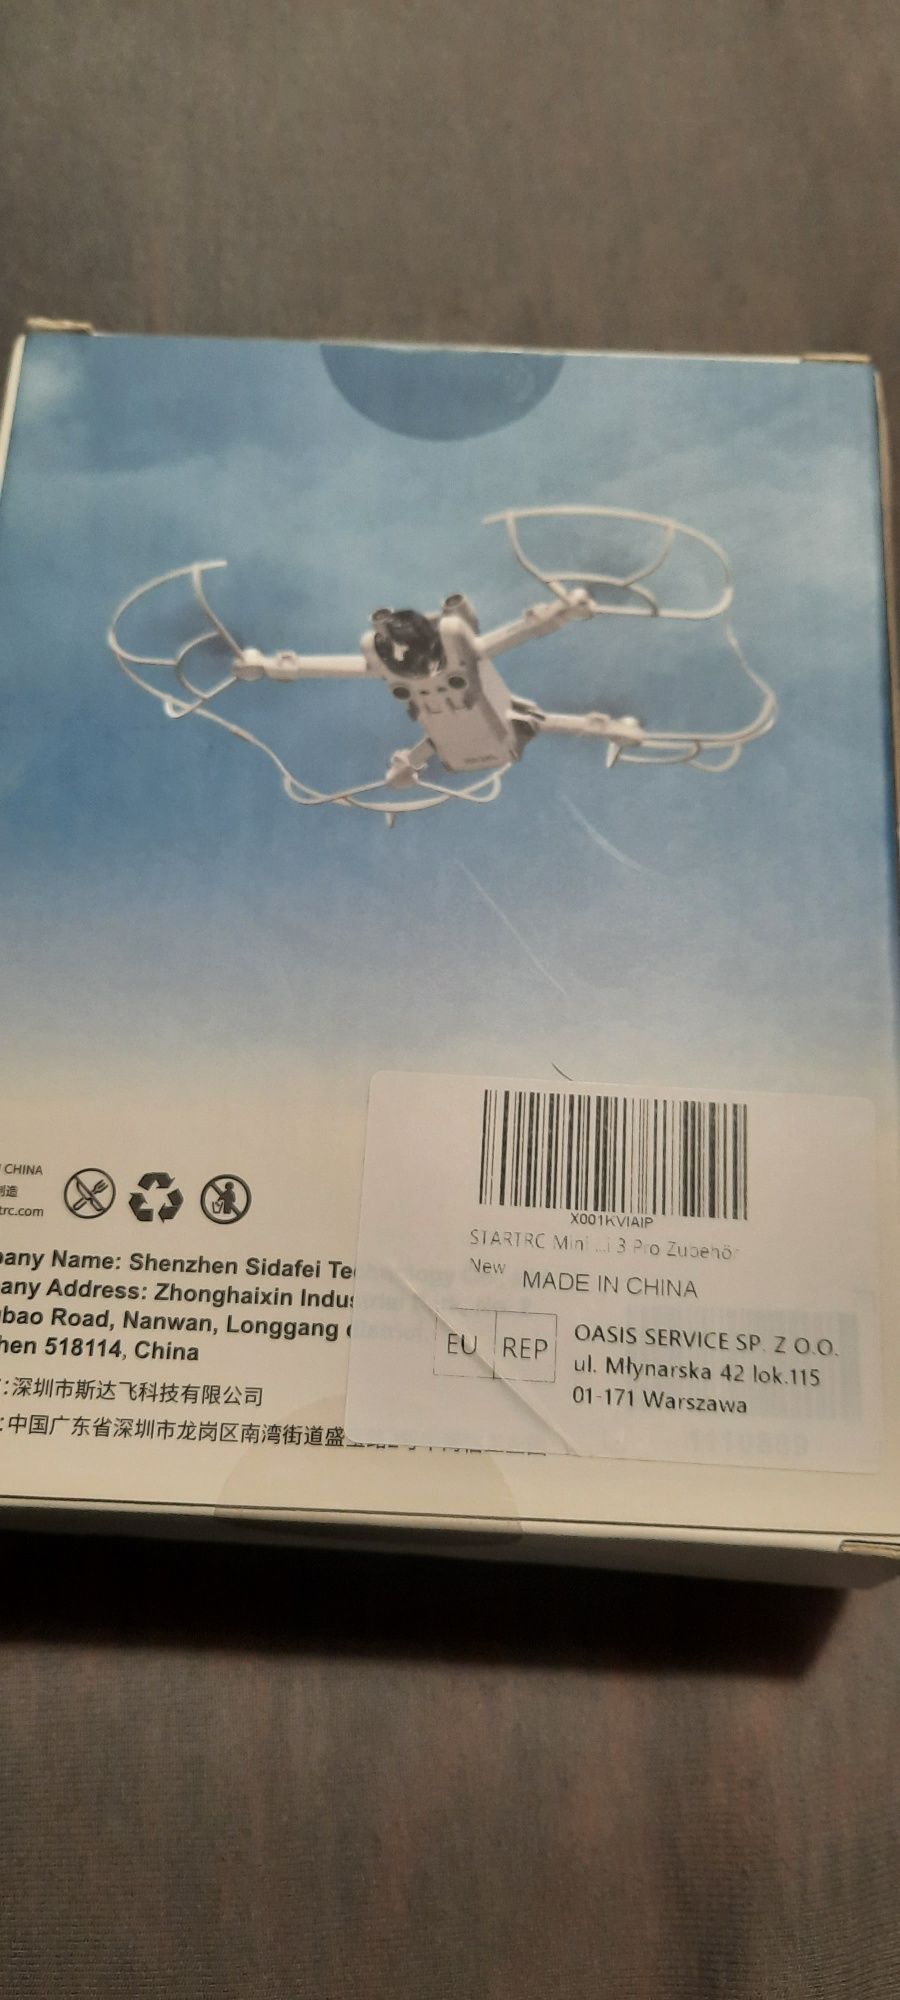 Osłony śmigiel drona Mini 3 PRO